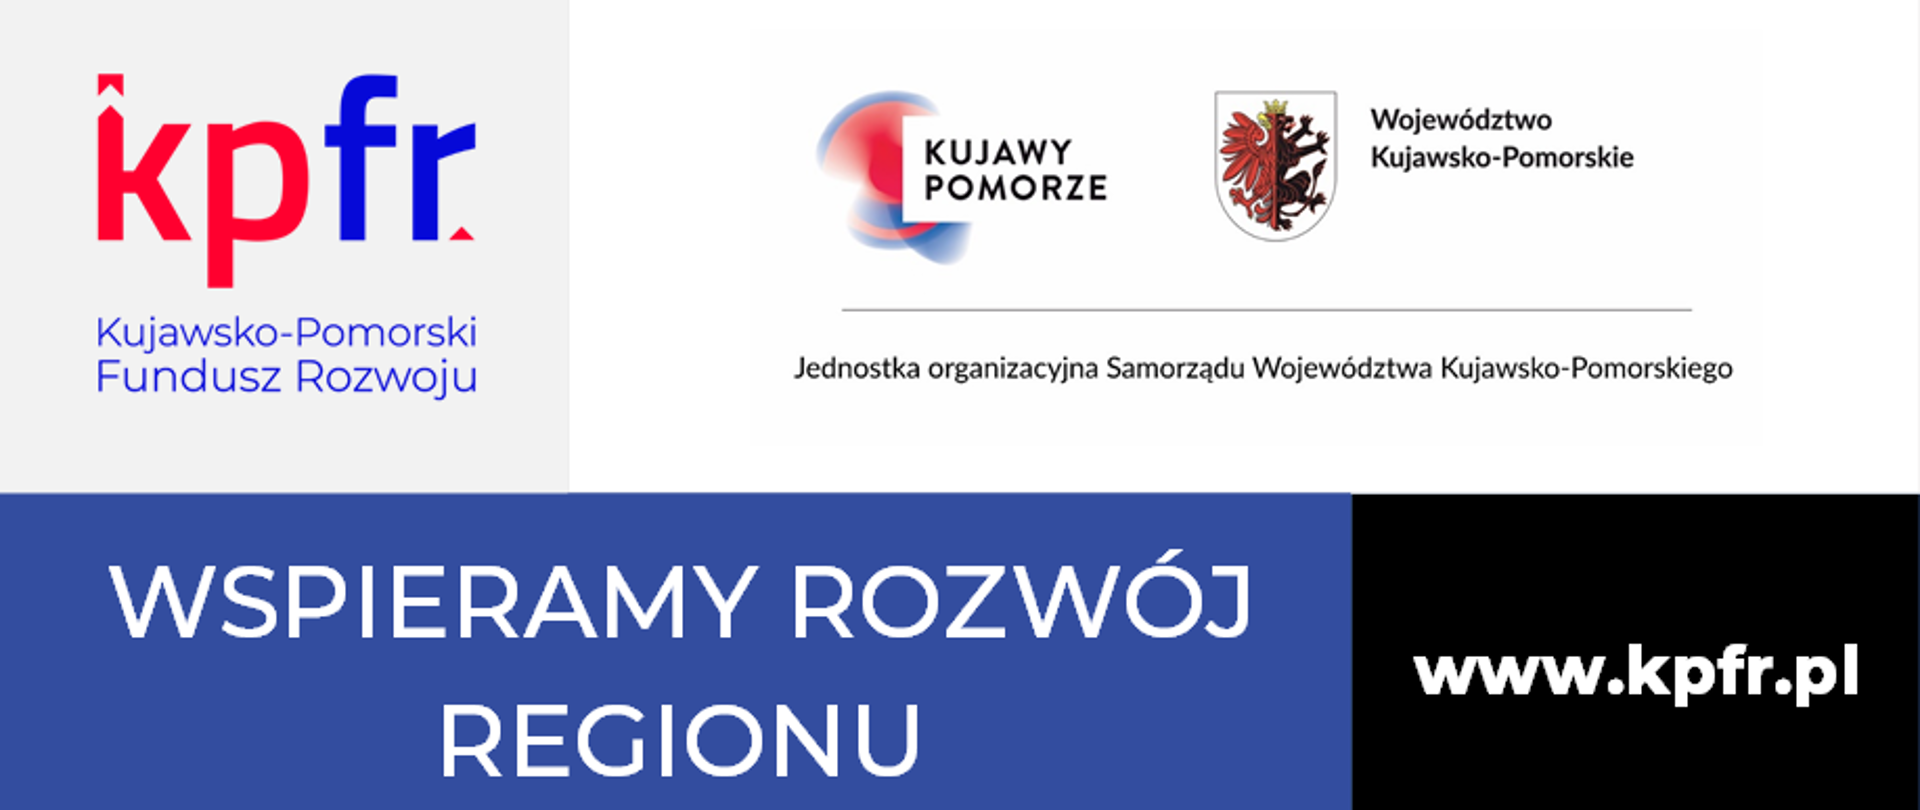 Kujawsko-Pomorski Fundusz Rozwoju - informacja